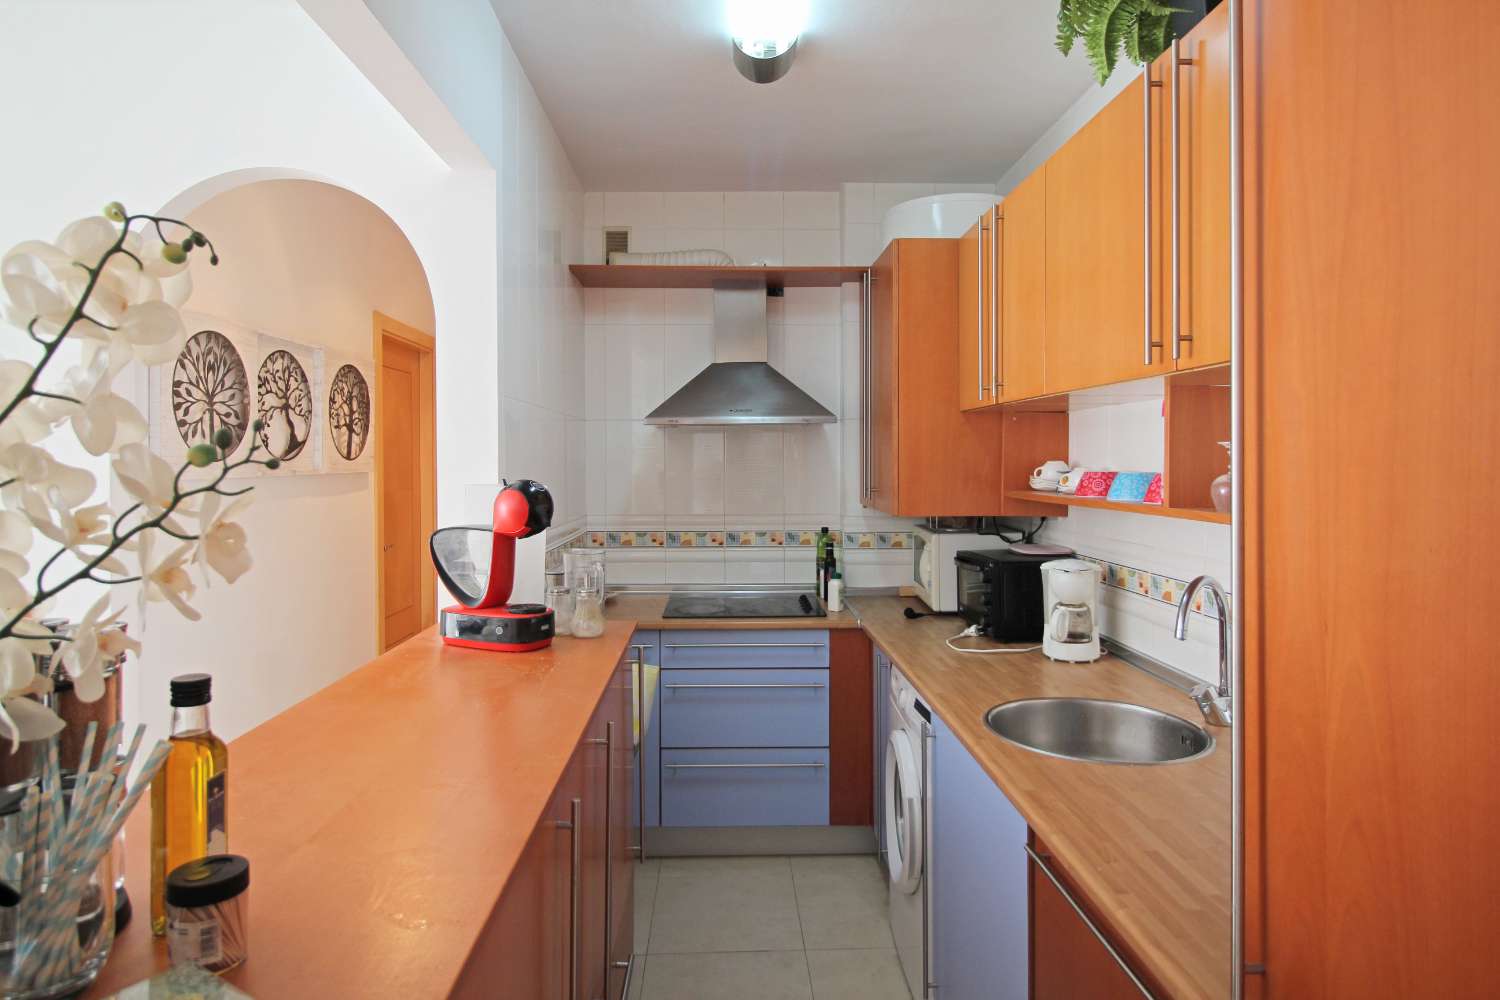 Apartment for sale in El Peñoncillo (Torrox)